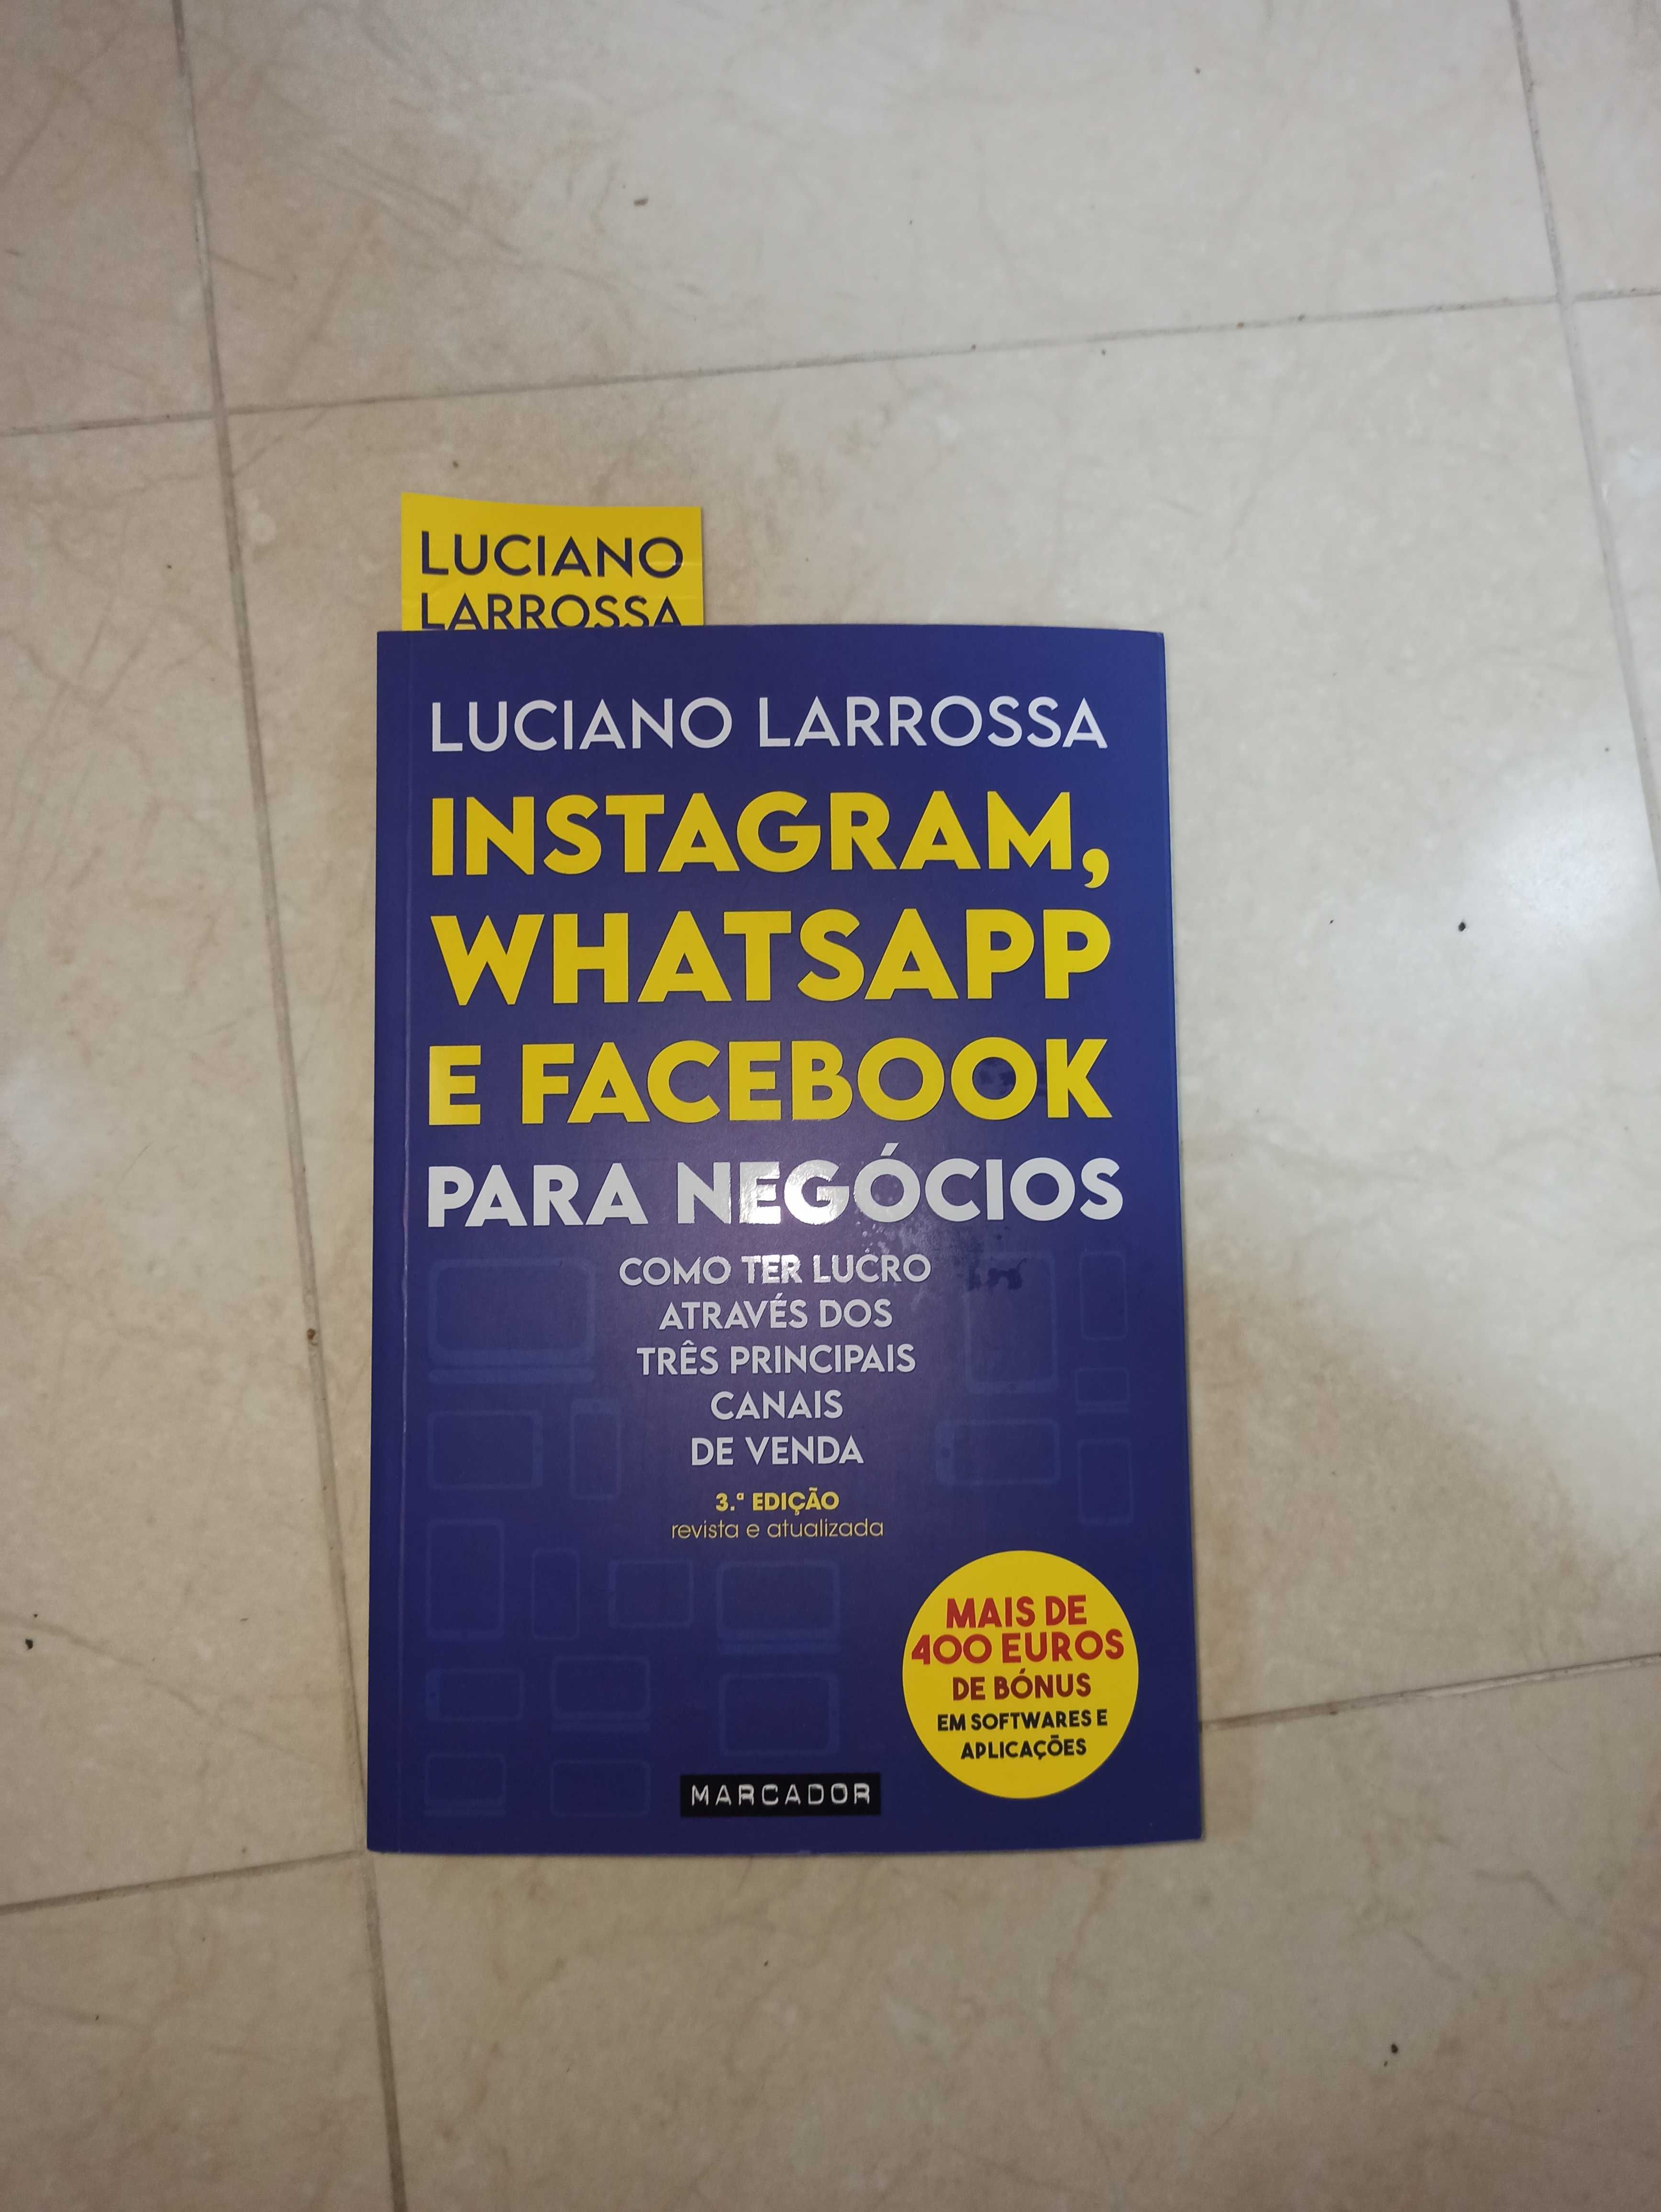 Livro Luciano Larossa "Instagram, WhatsApp e Facebook para Negócios"